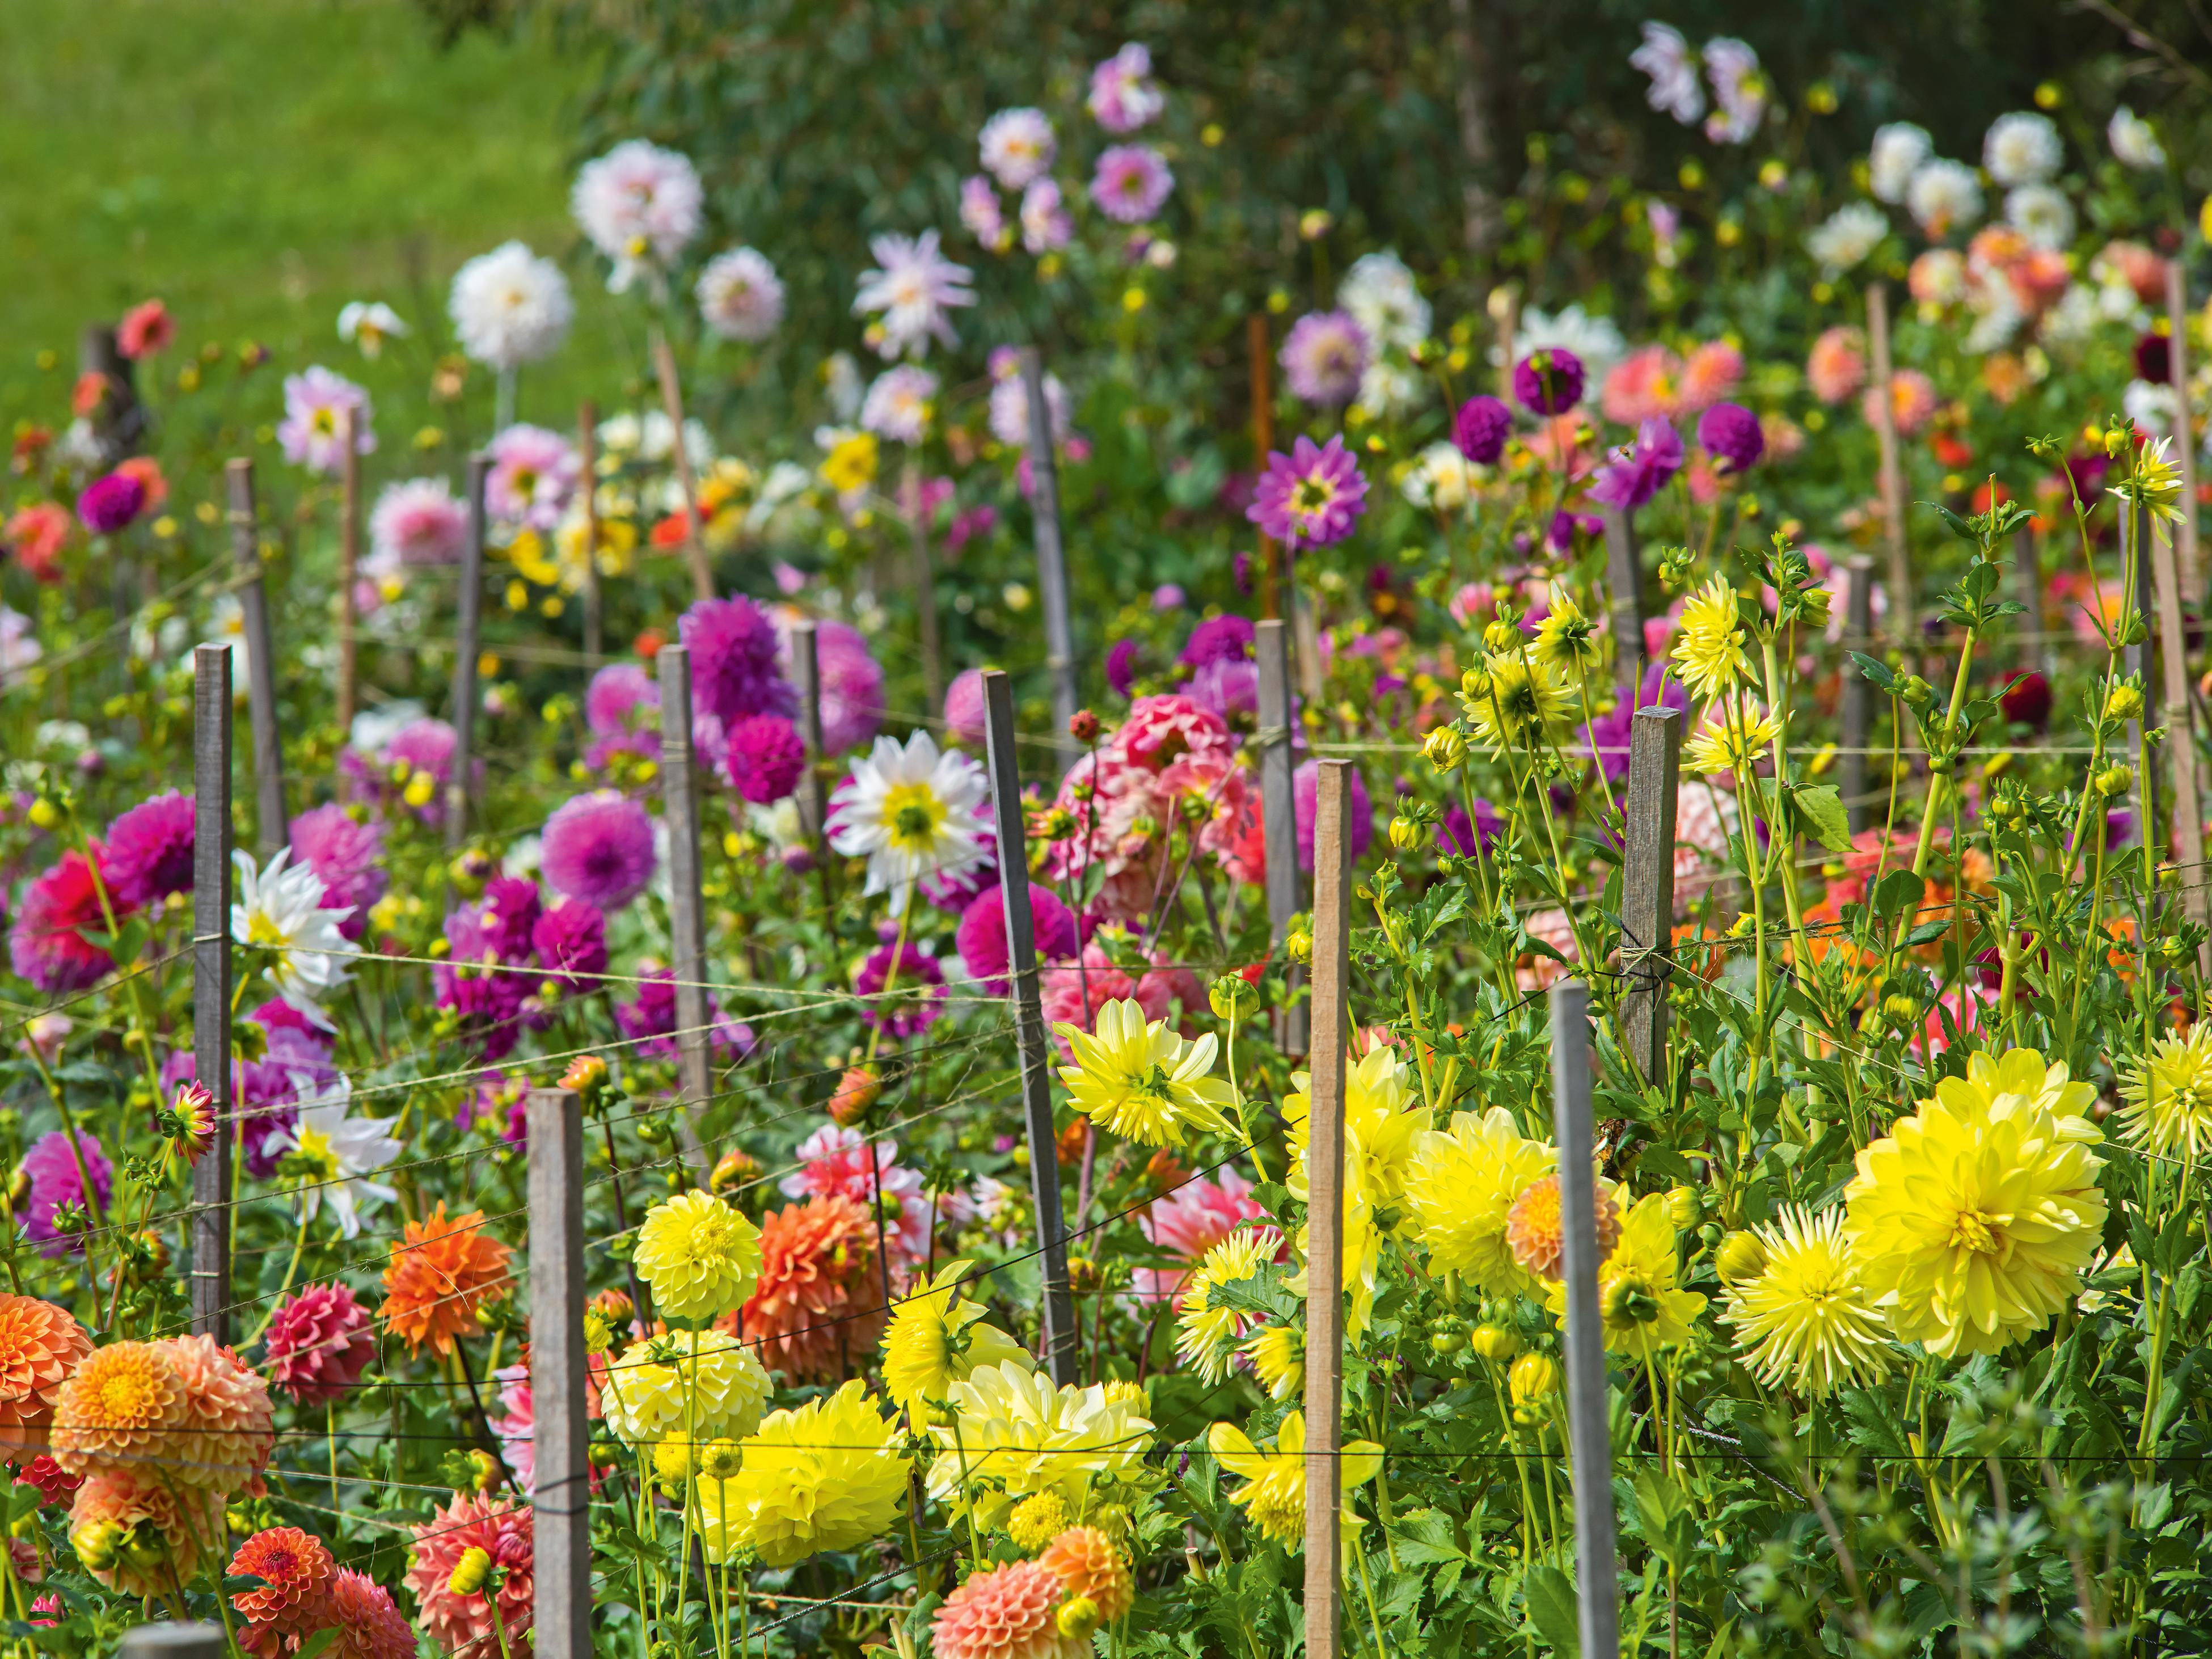 How To Start A Flower Garden: 13 Essential Steps - Bunnings New Zealand